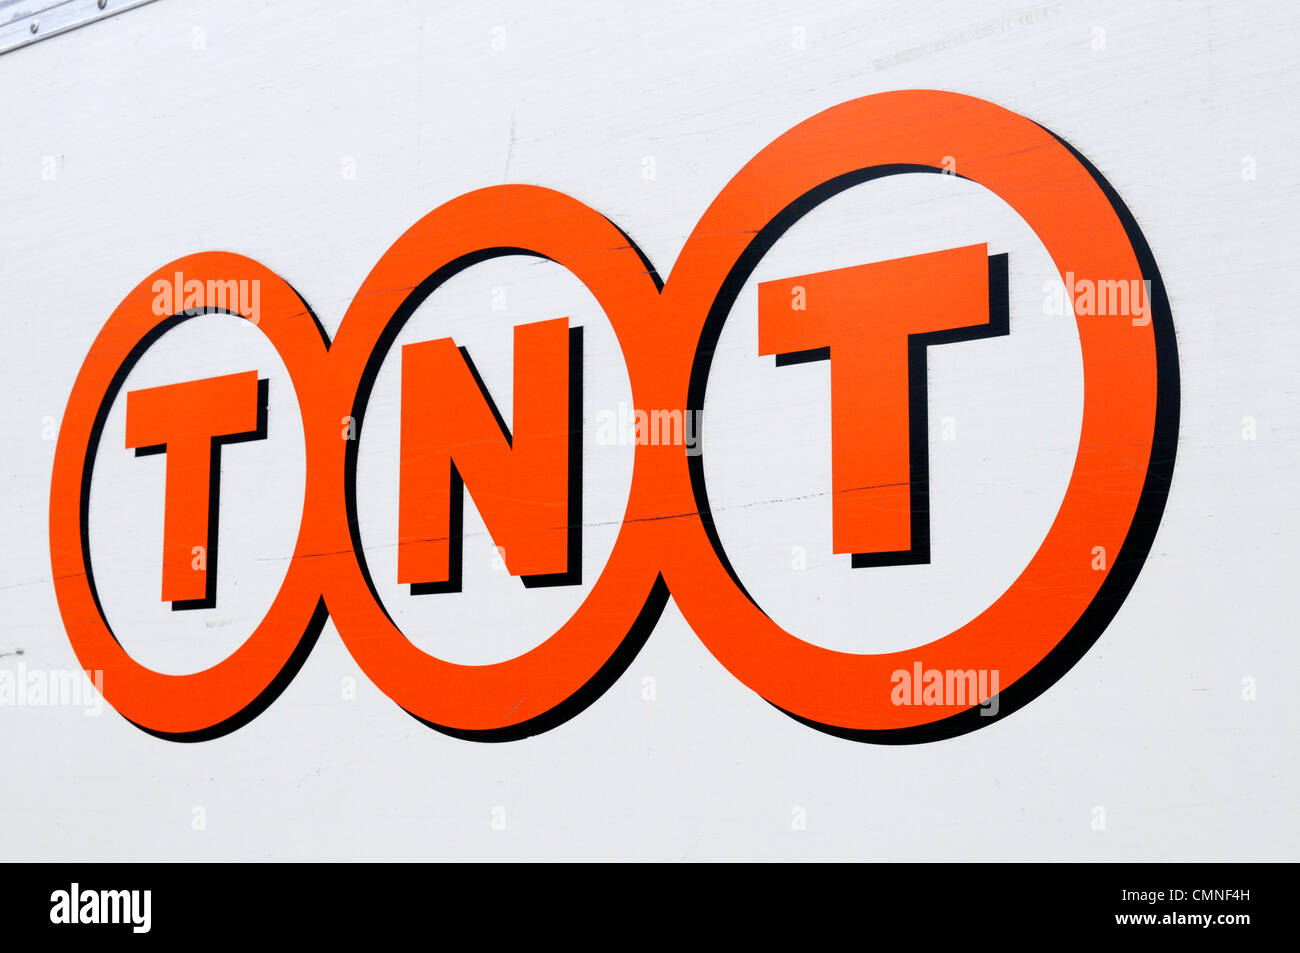 TNT Global Express-Kurier-Logo, Cambridge, England, UK Stockfoto